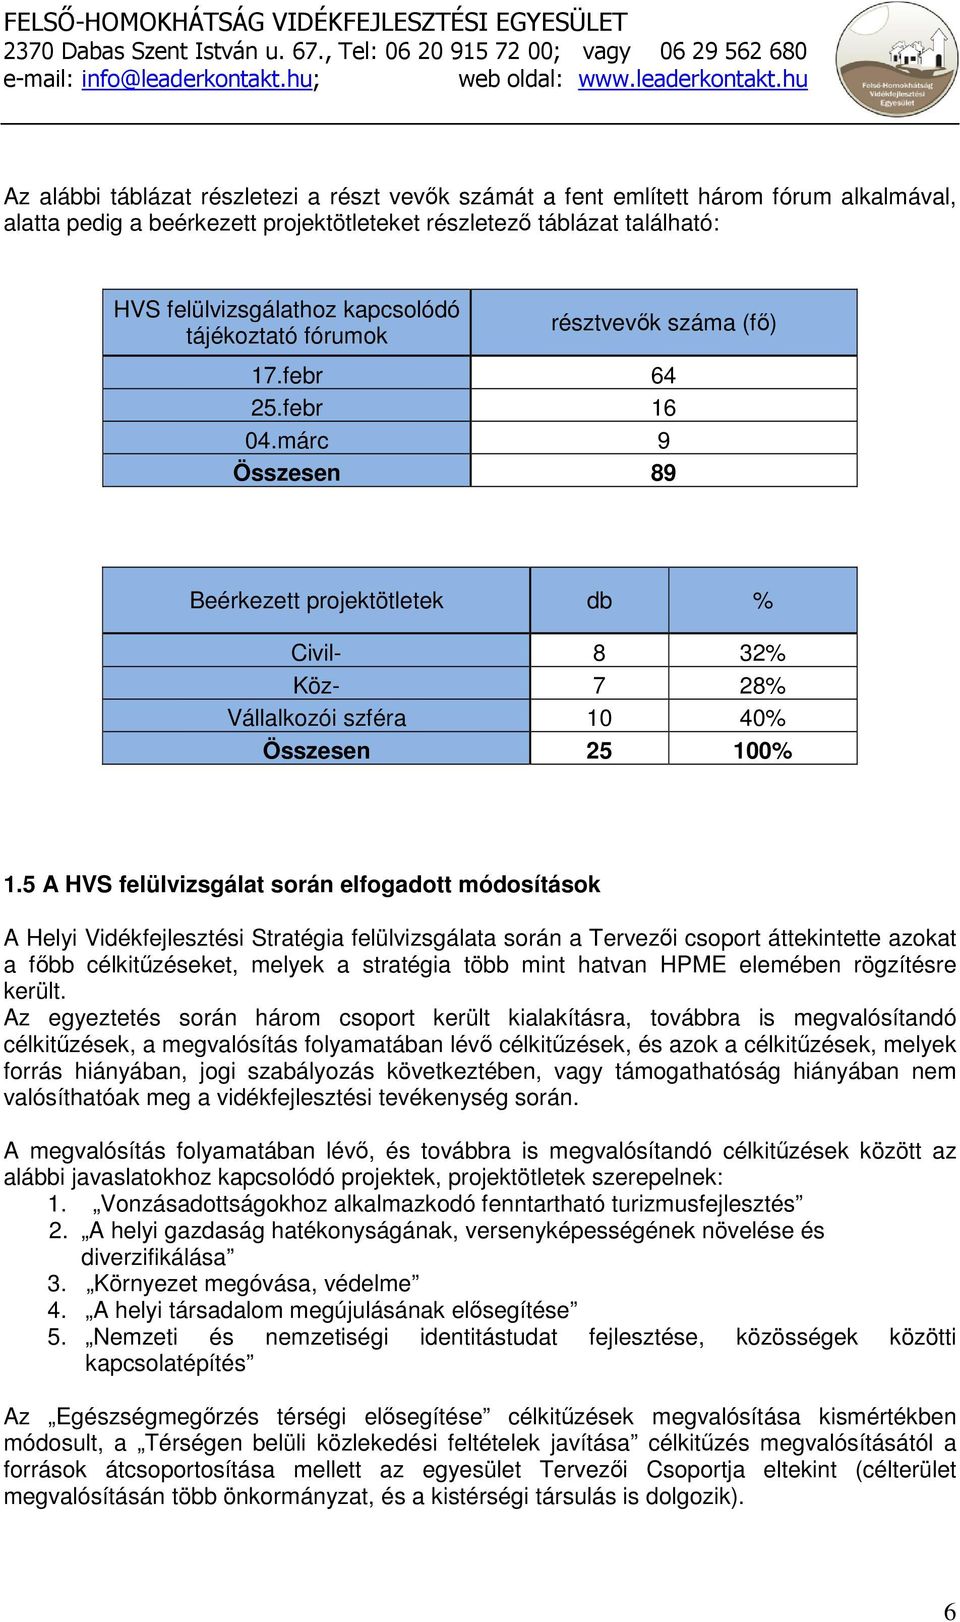 5 A HVS felülvizsgálat során elfogadott módosítások A Helyi Vidékfejlesztési Stratégia felülvizsgálata során a Tervezıi csoport áttekintette azokat a fıbb célkitőzéseket, melyek a stratégia több mint